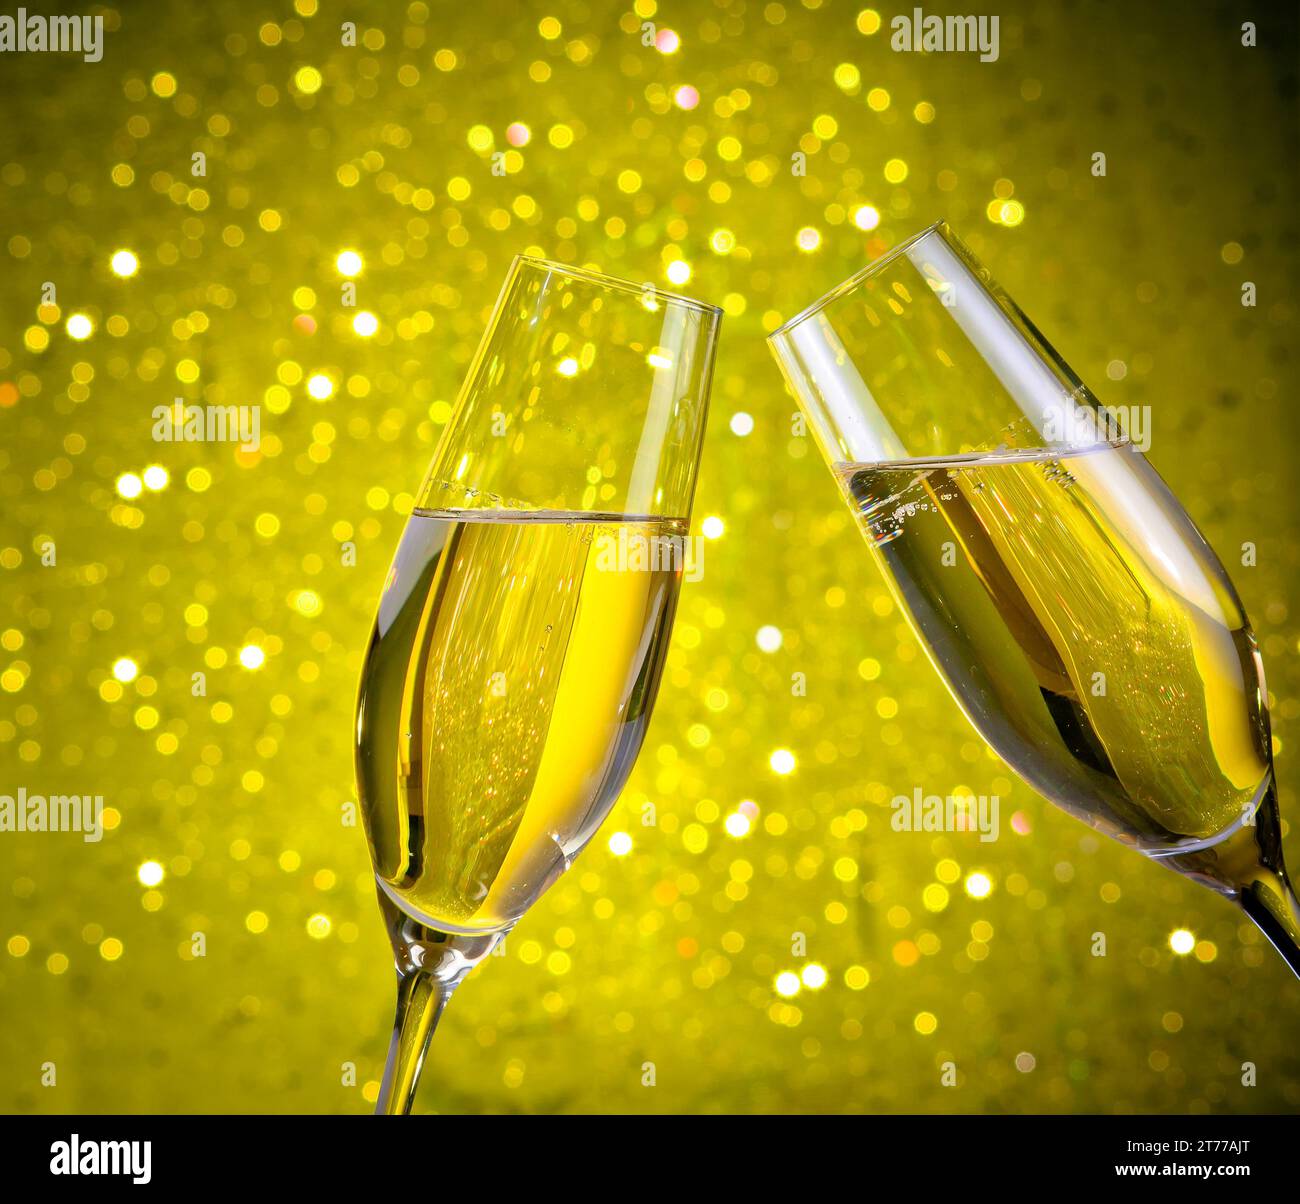 un paio di flauti di champagne con bolle d'oro fanno il tifo su sfondo giallo chiaro bokeh Foto Stock